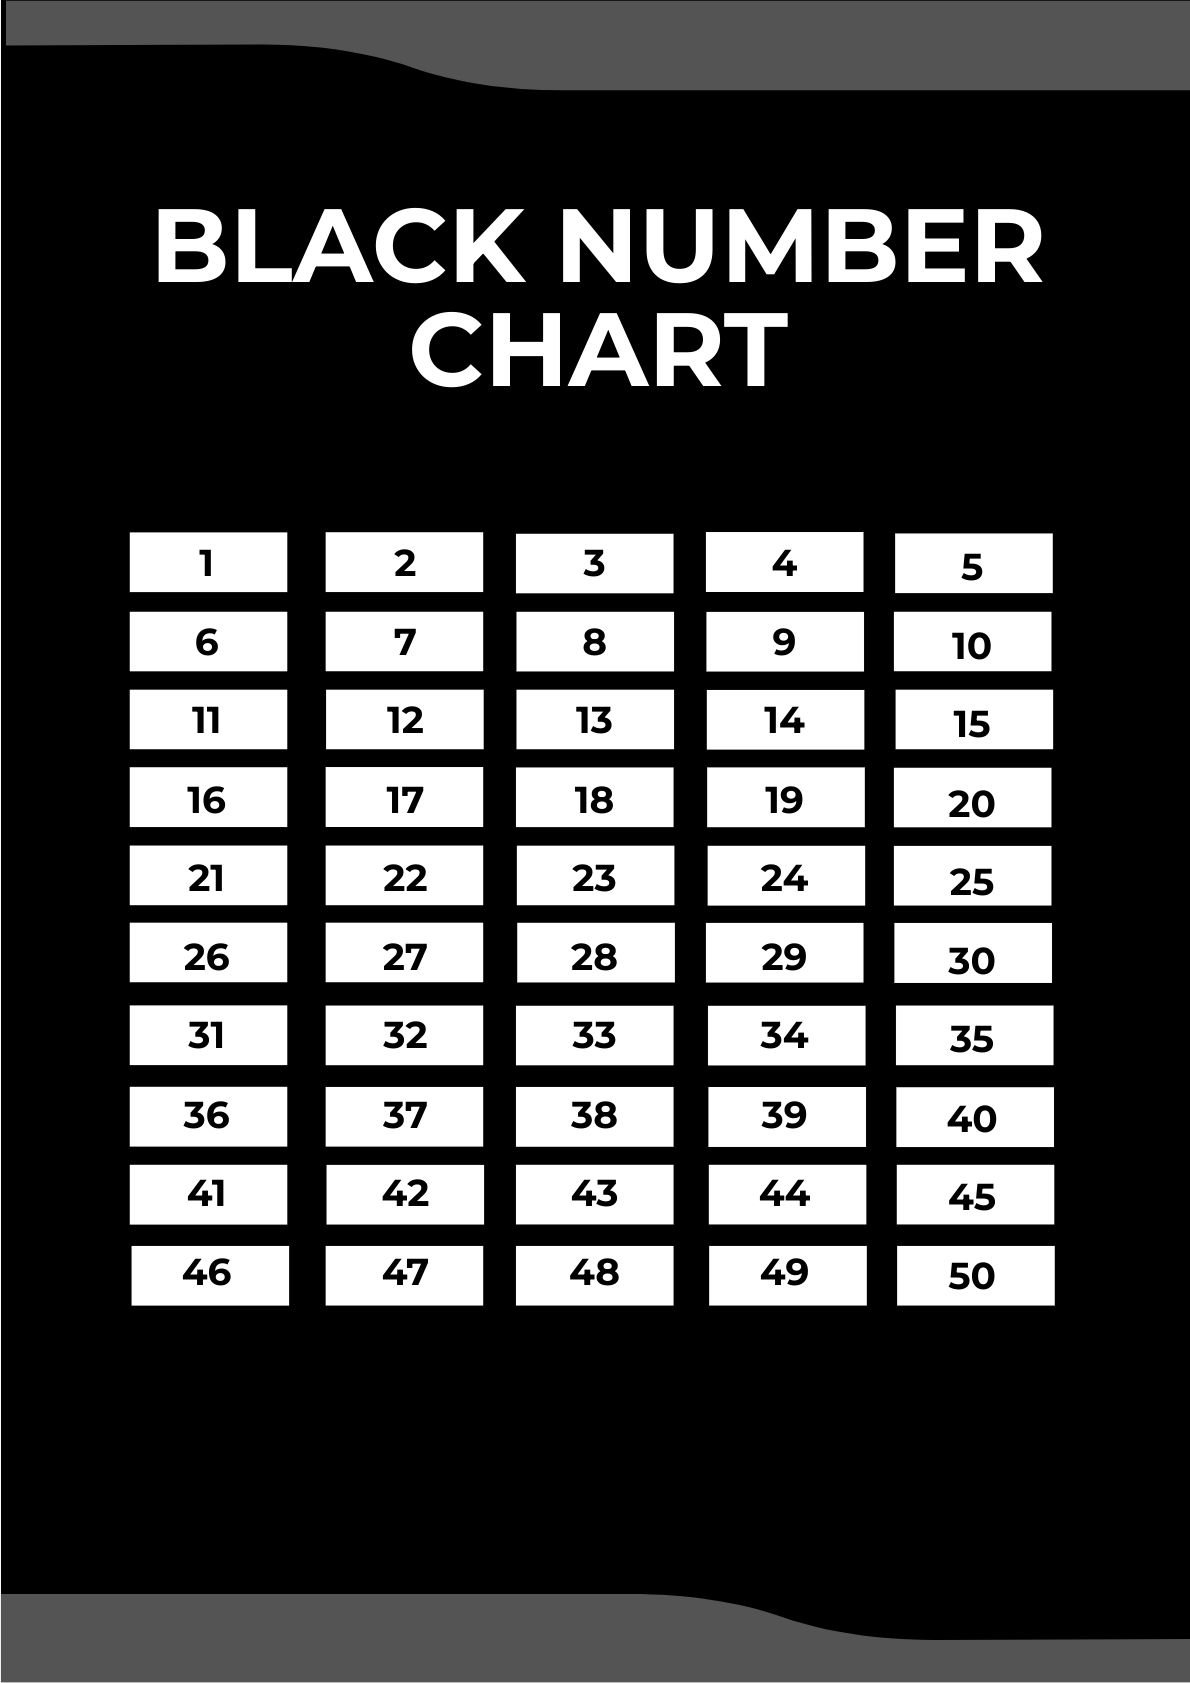 Black Number Chart in PDF, Illustrator